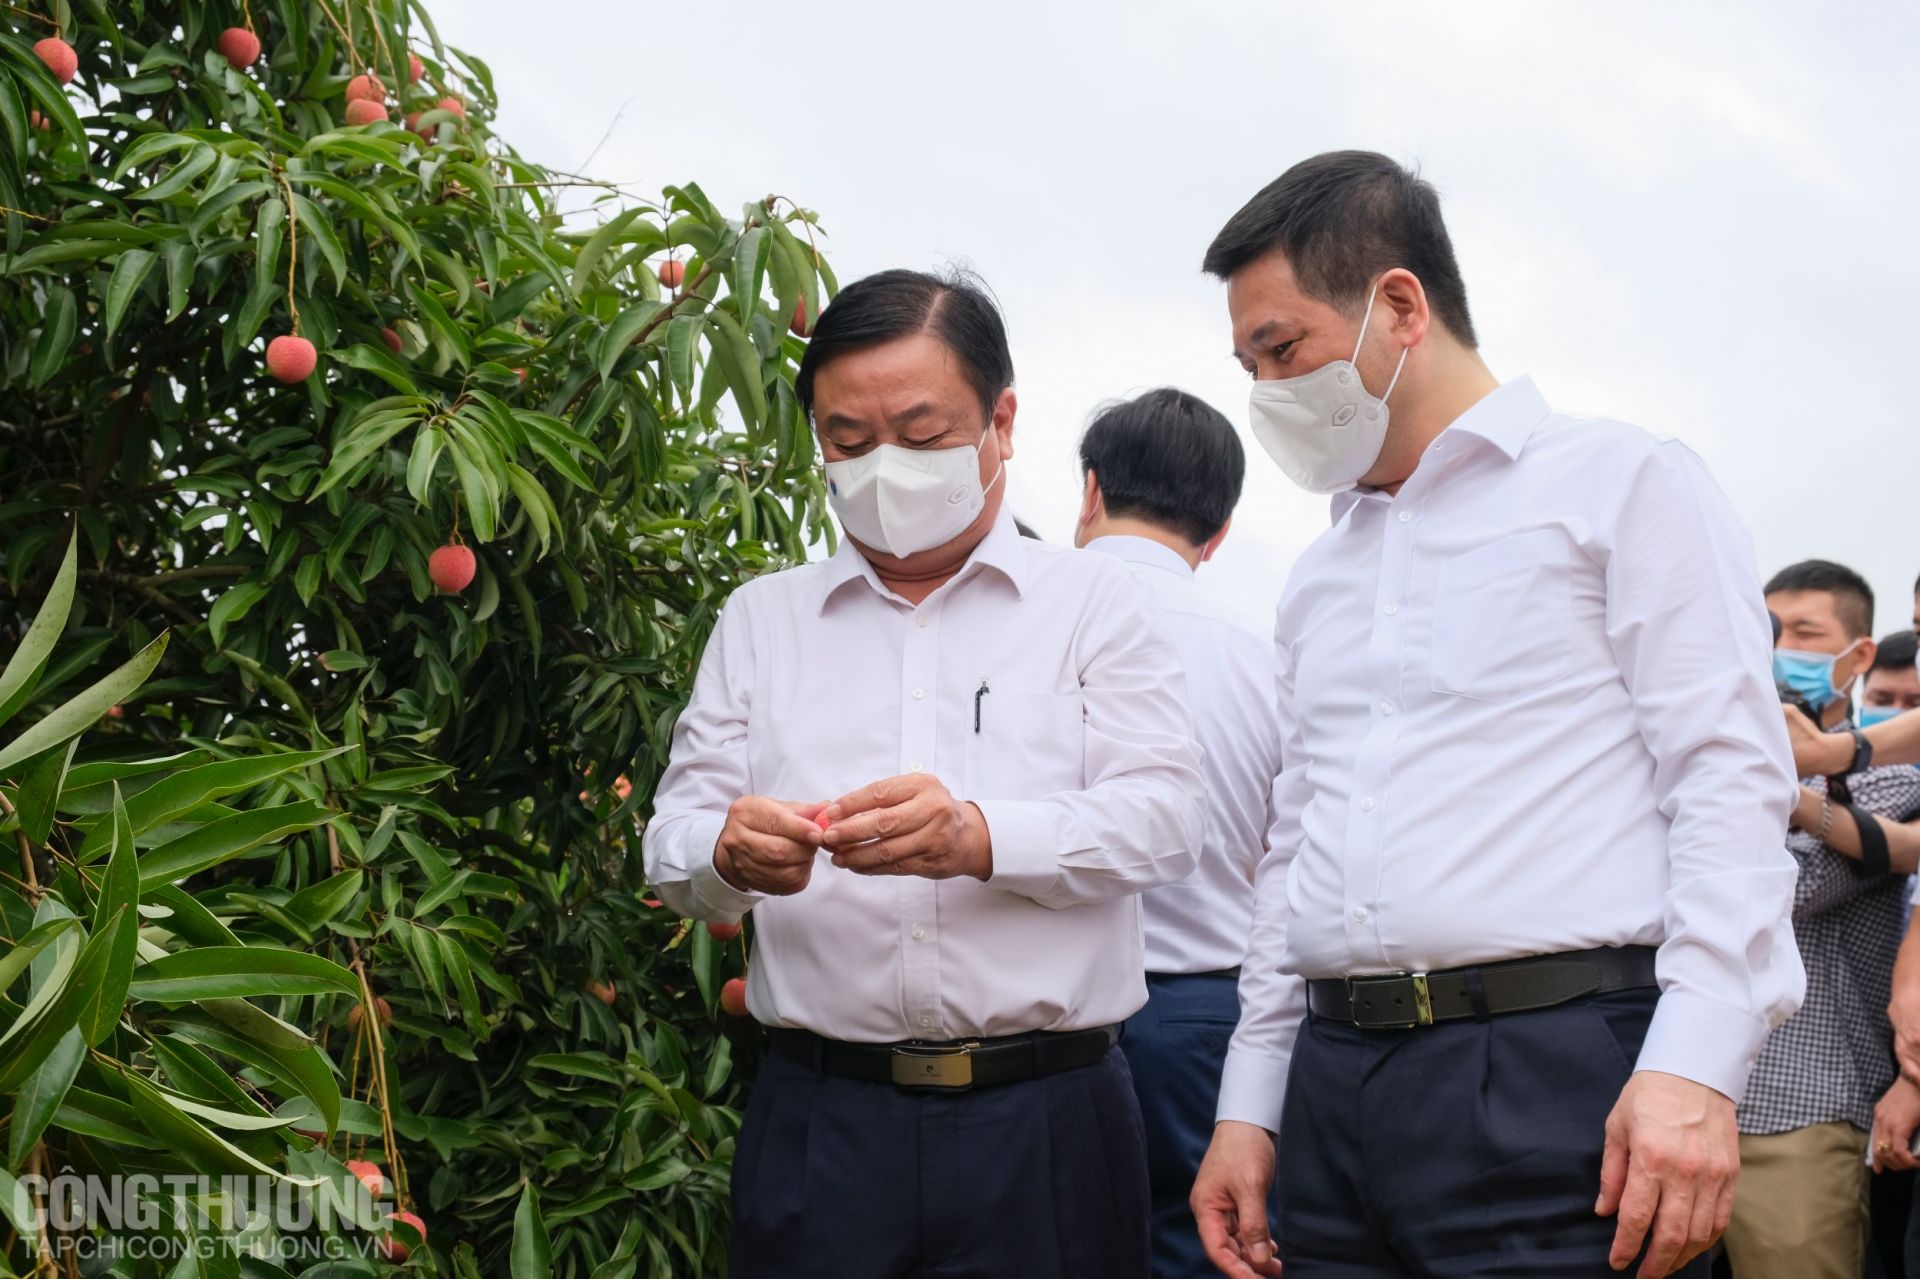 Tư lệnh ngành Công Thương và ngành Nông nghiệp trực tiếp trải nghiệm thu hái tại vườn vải thiều thôn Thanh Lanh, xã Thanh Quang, huyện Thanh Hà, tỉnh Hải Dương